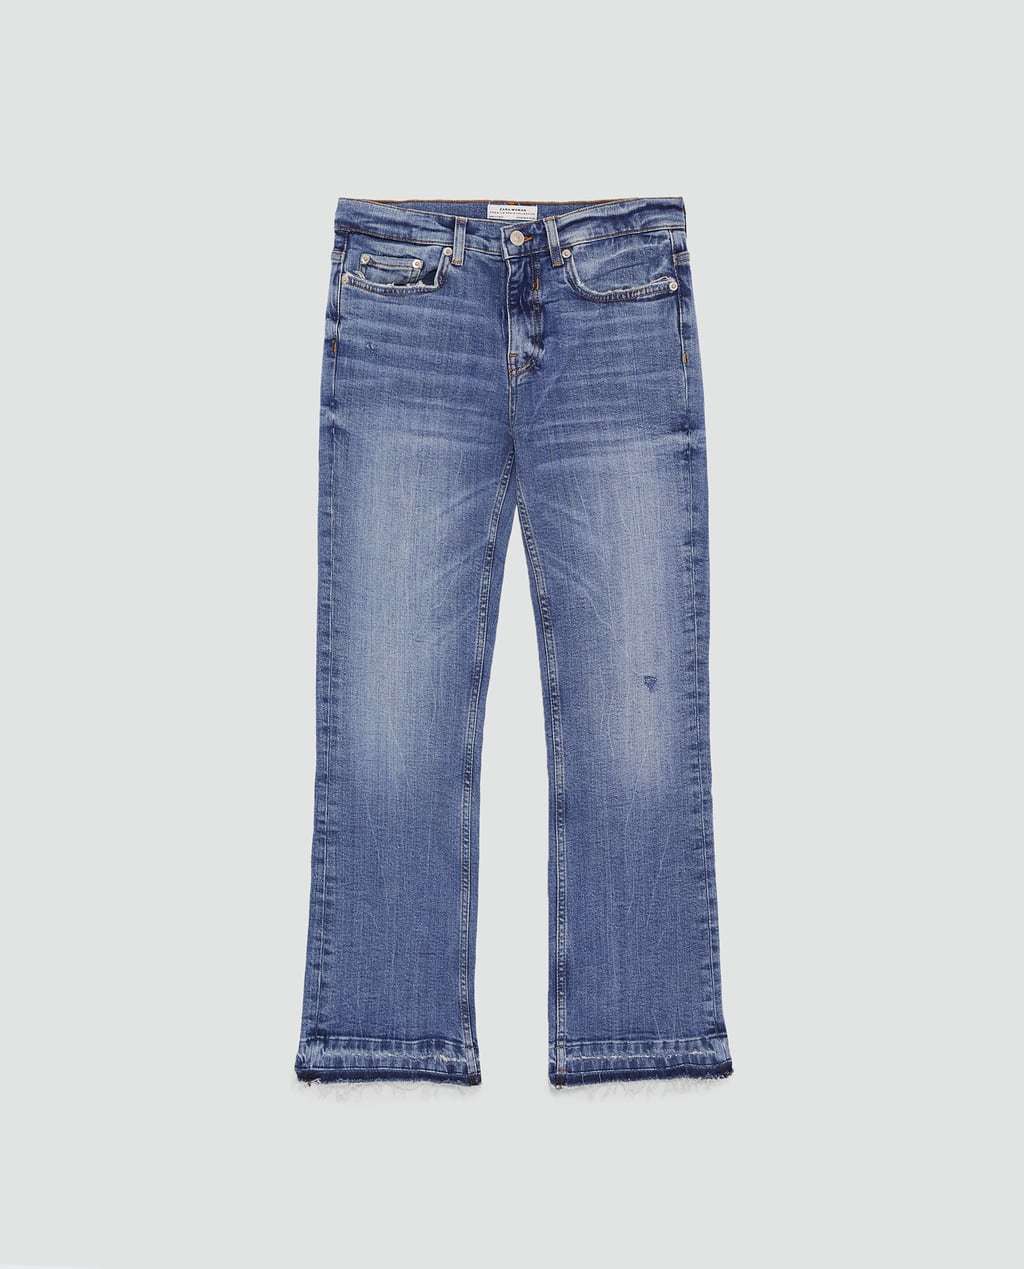 Jeans con bajo desflecado de Zara (29,95 euros)